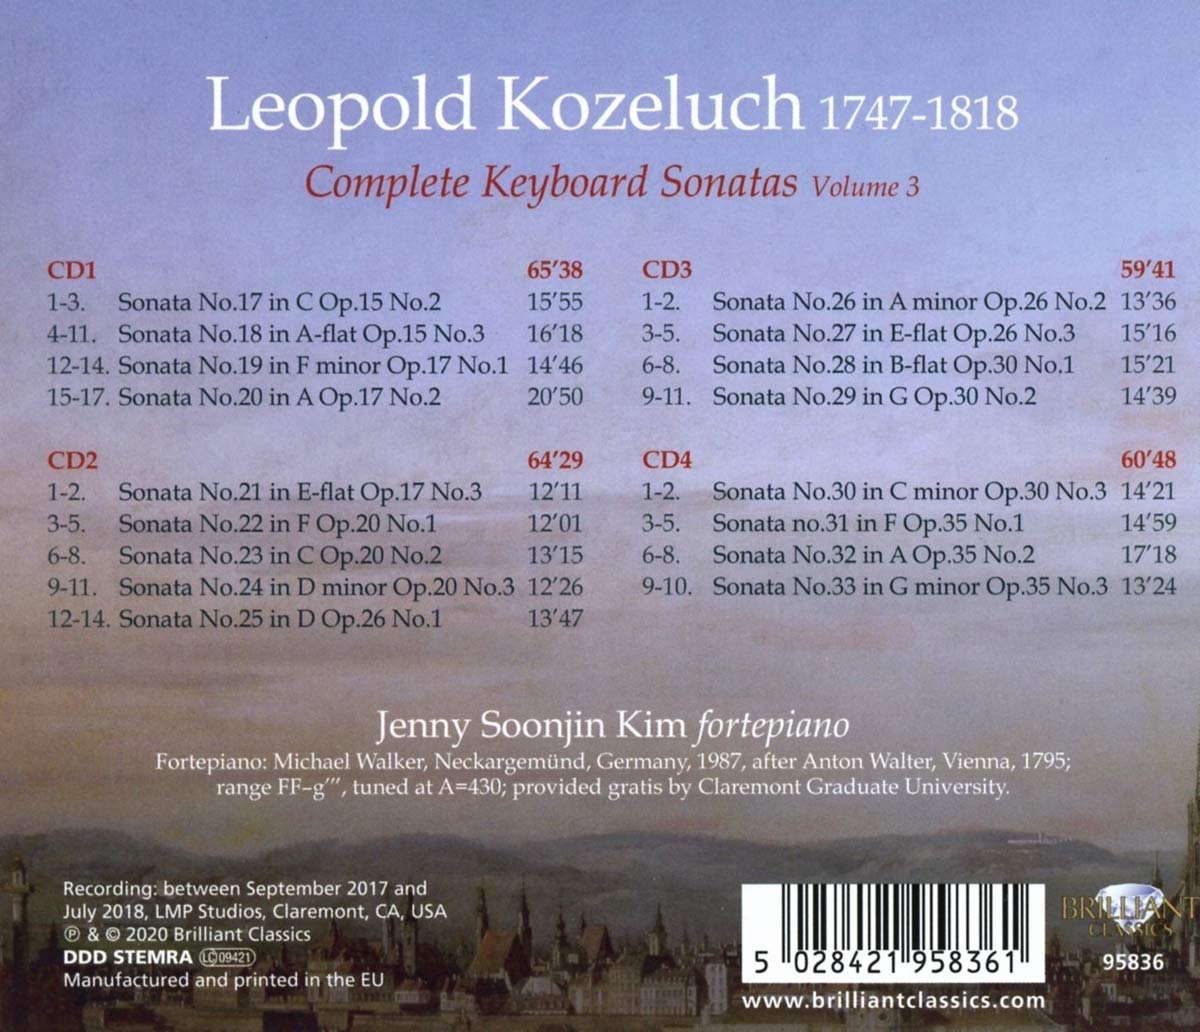 김순진 - 코젤루흐: 키보드 소나타 전곡 3집 (Kozeluch: Complete Keyboard Sonatas Vol.3)